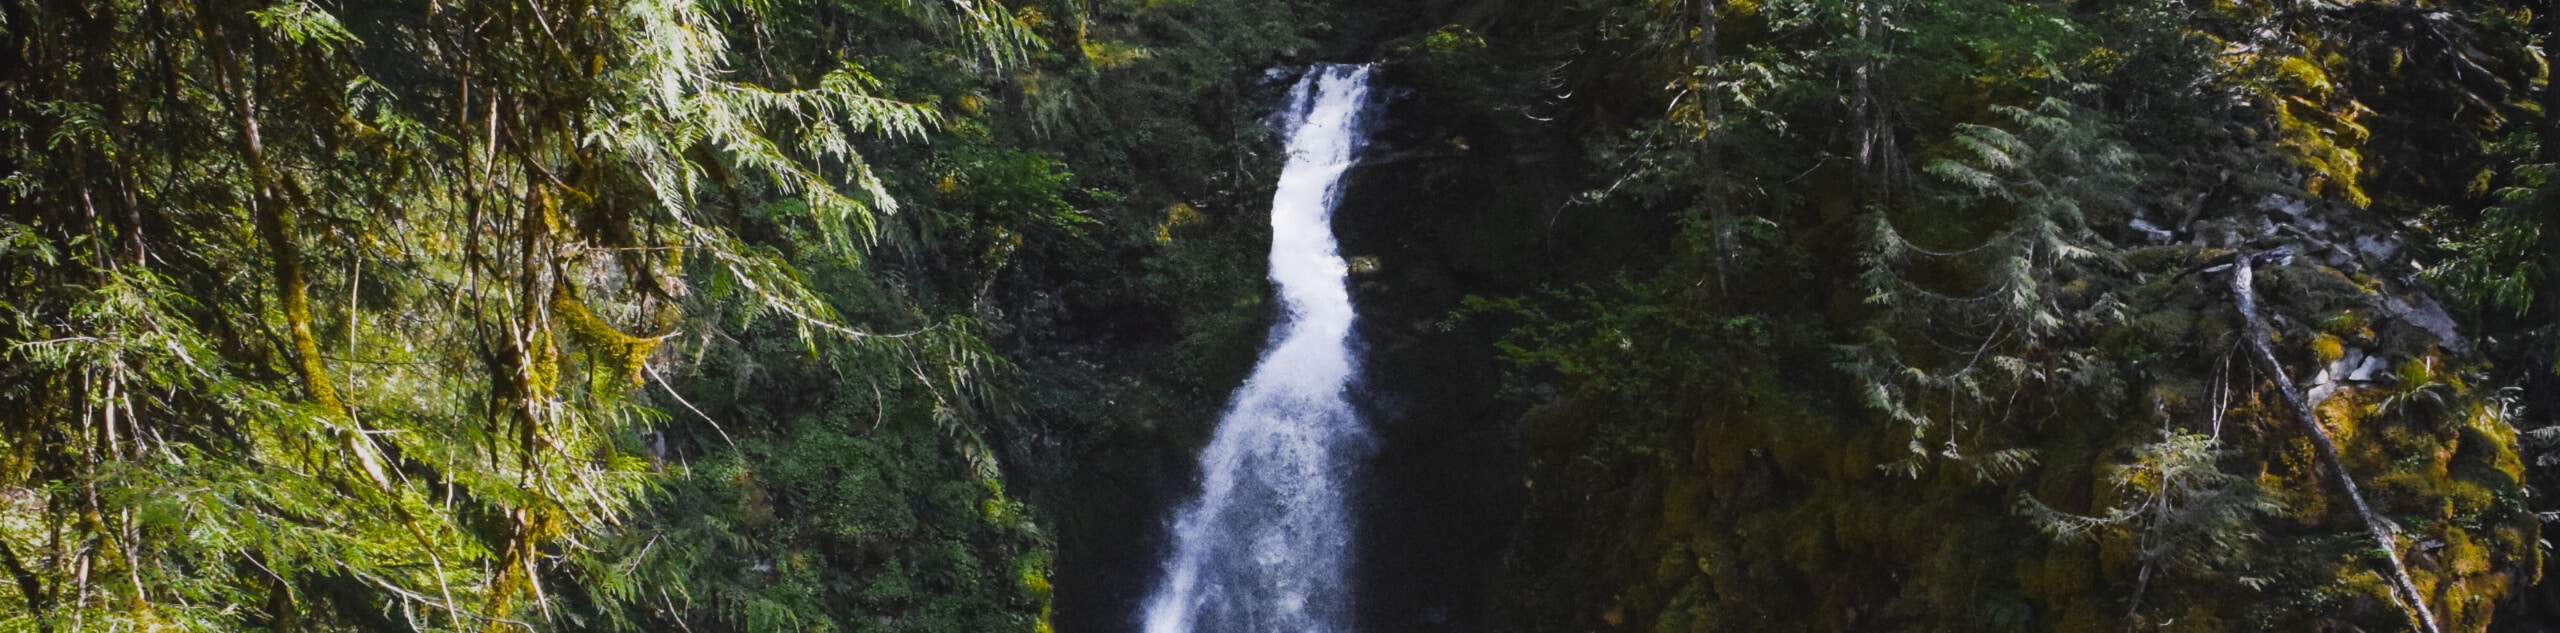 Pinard Falls Trail